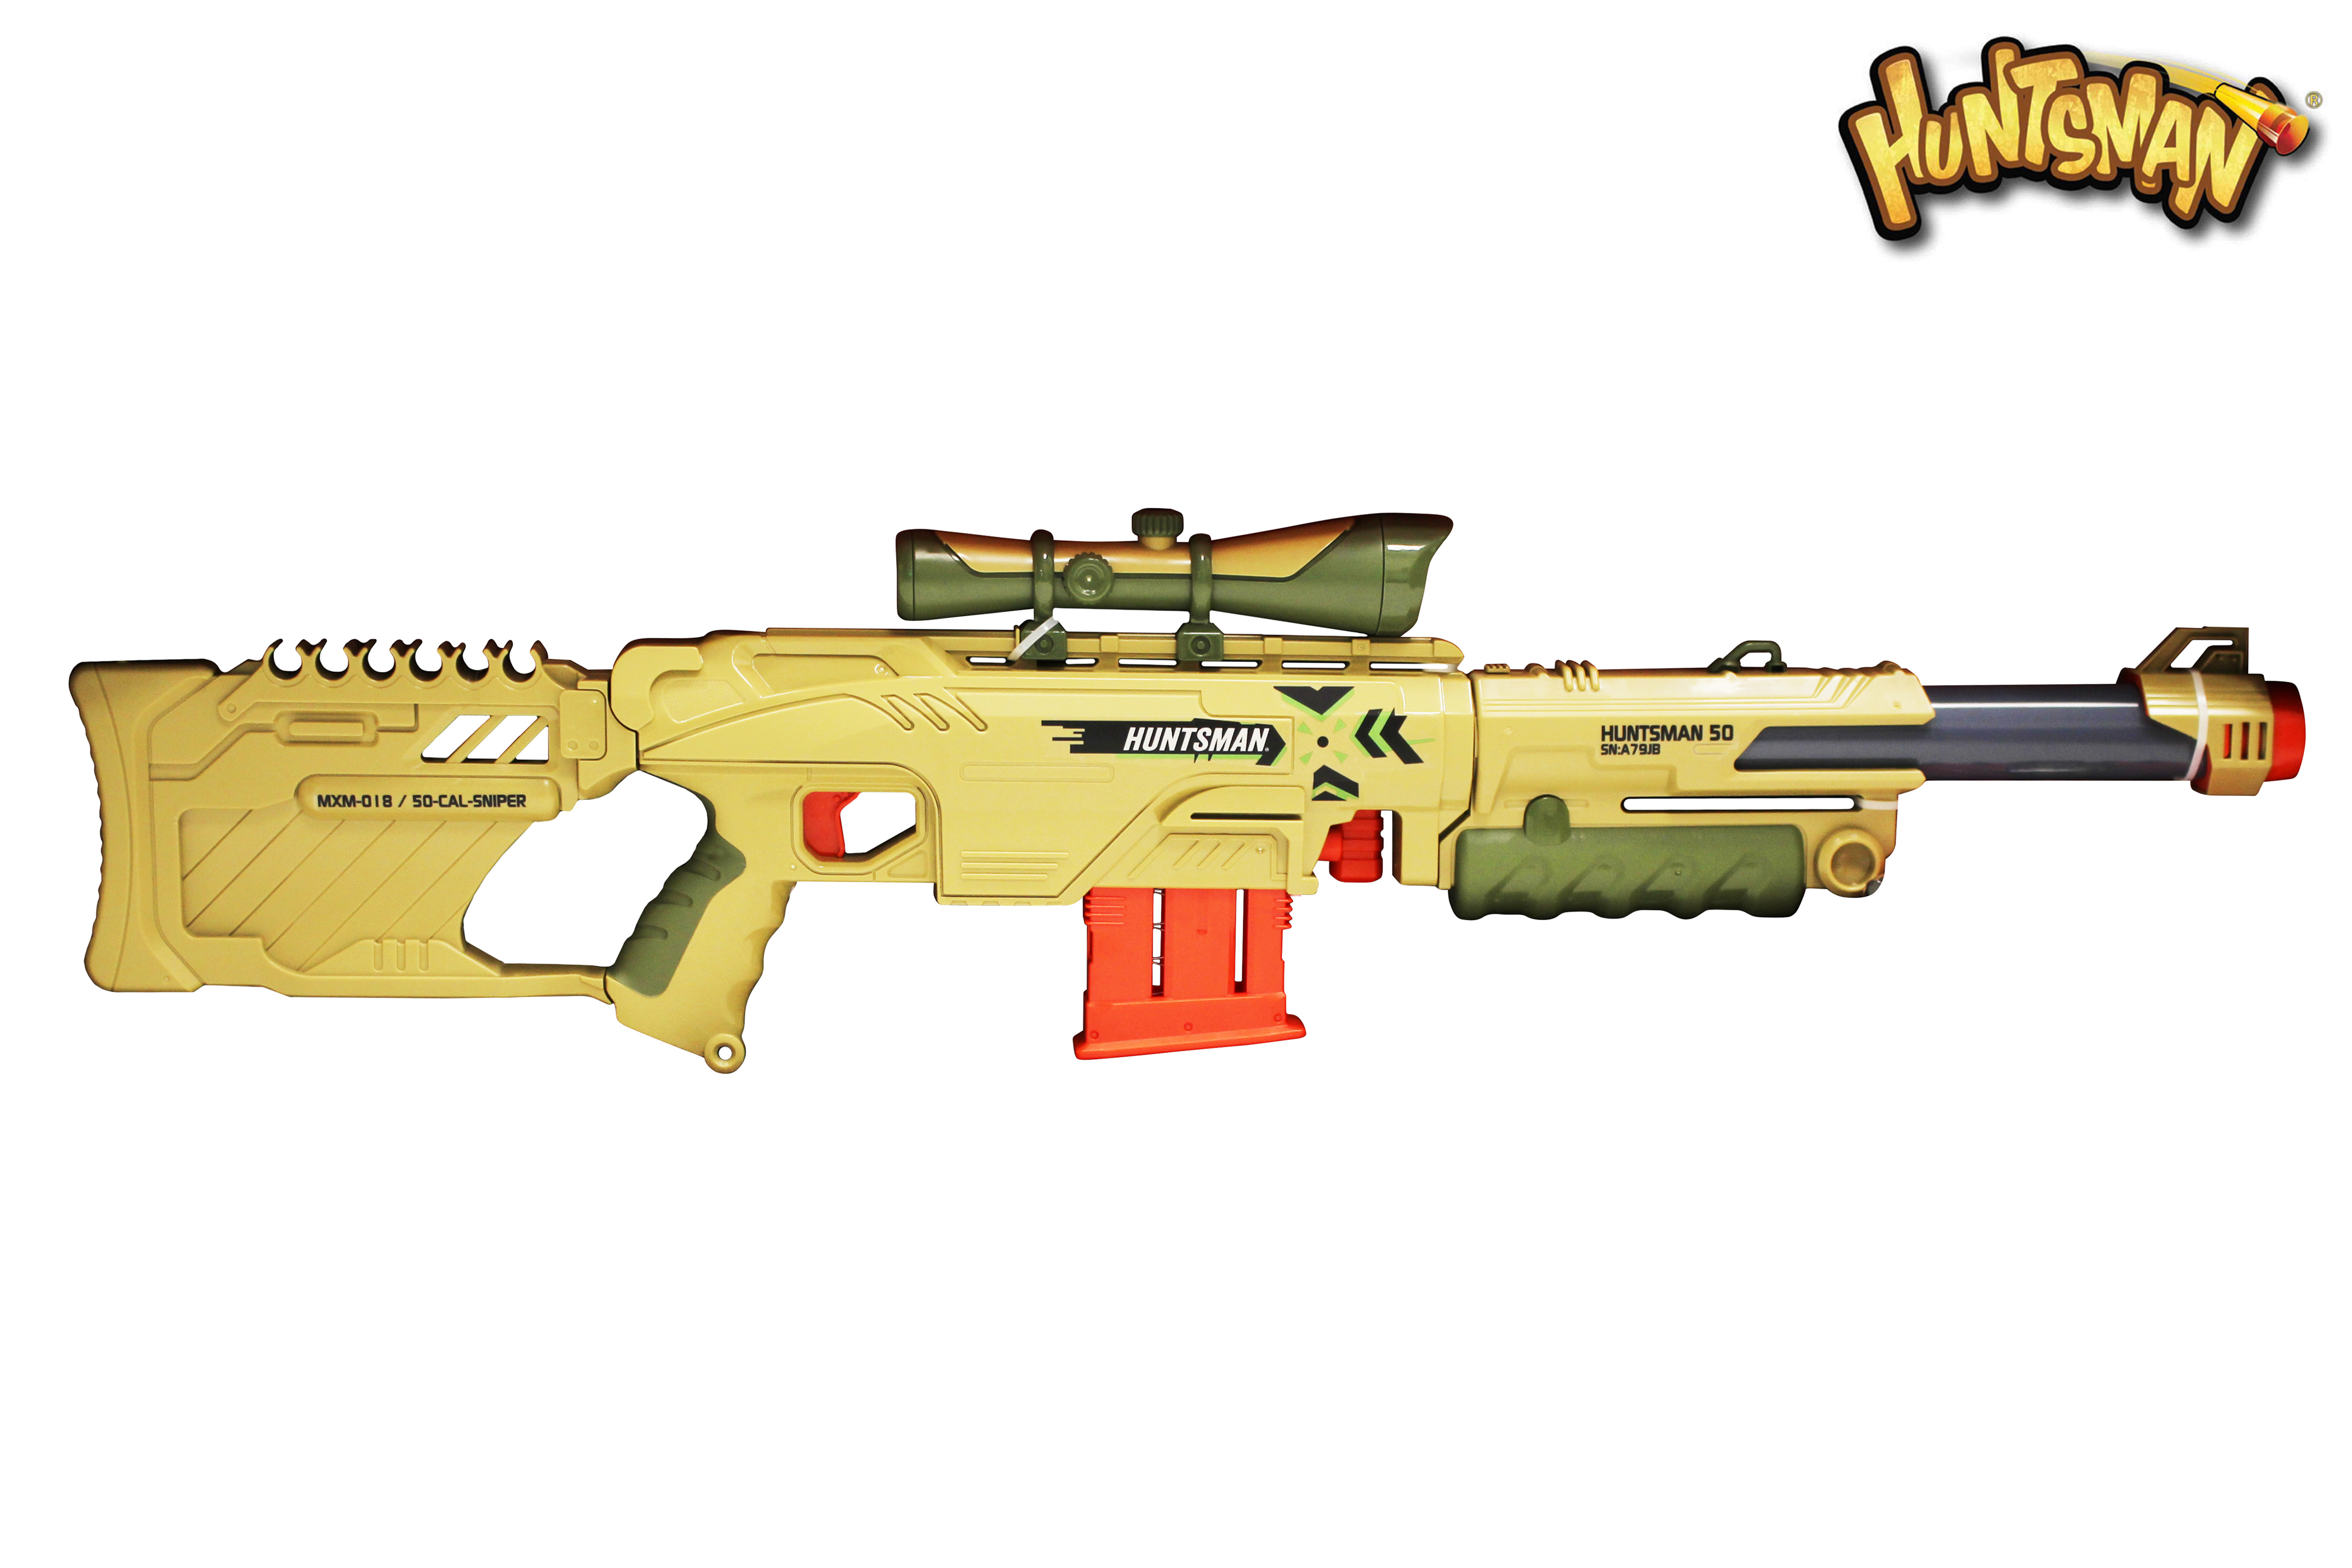 Puška Sniper Blaster 50 Huntsman 92 cm